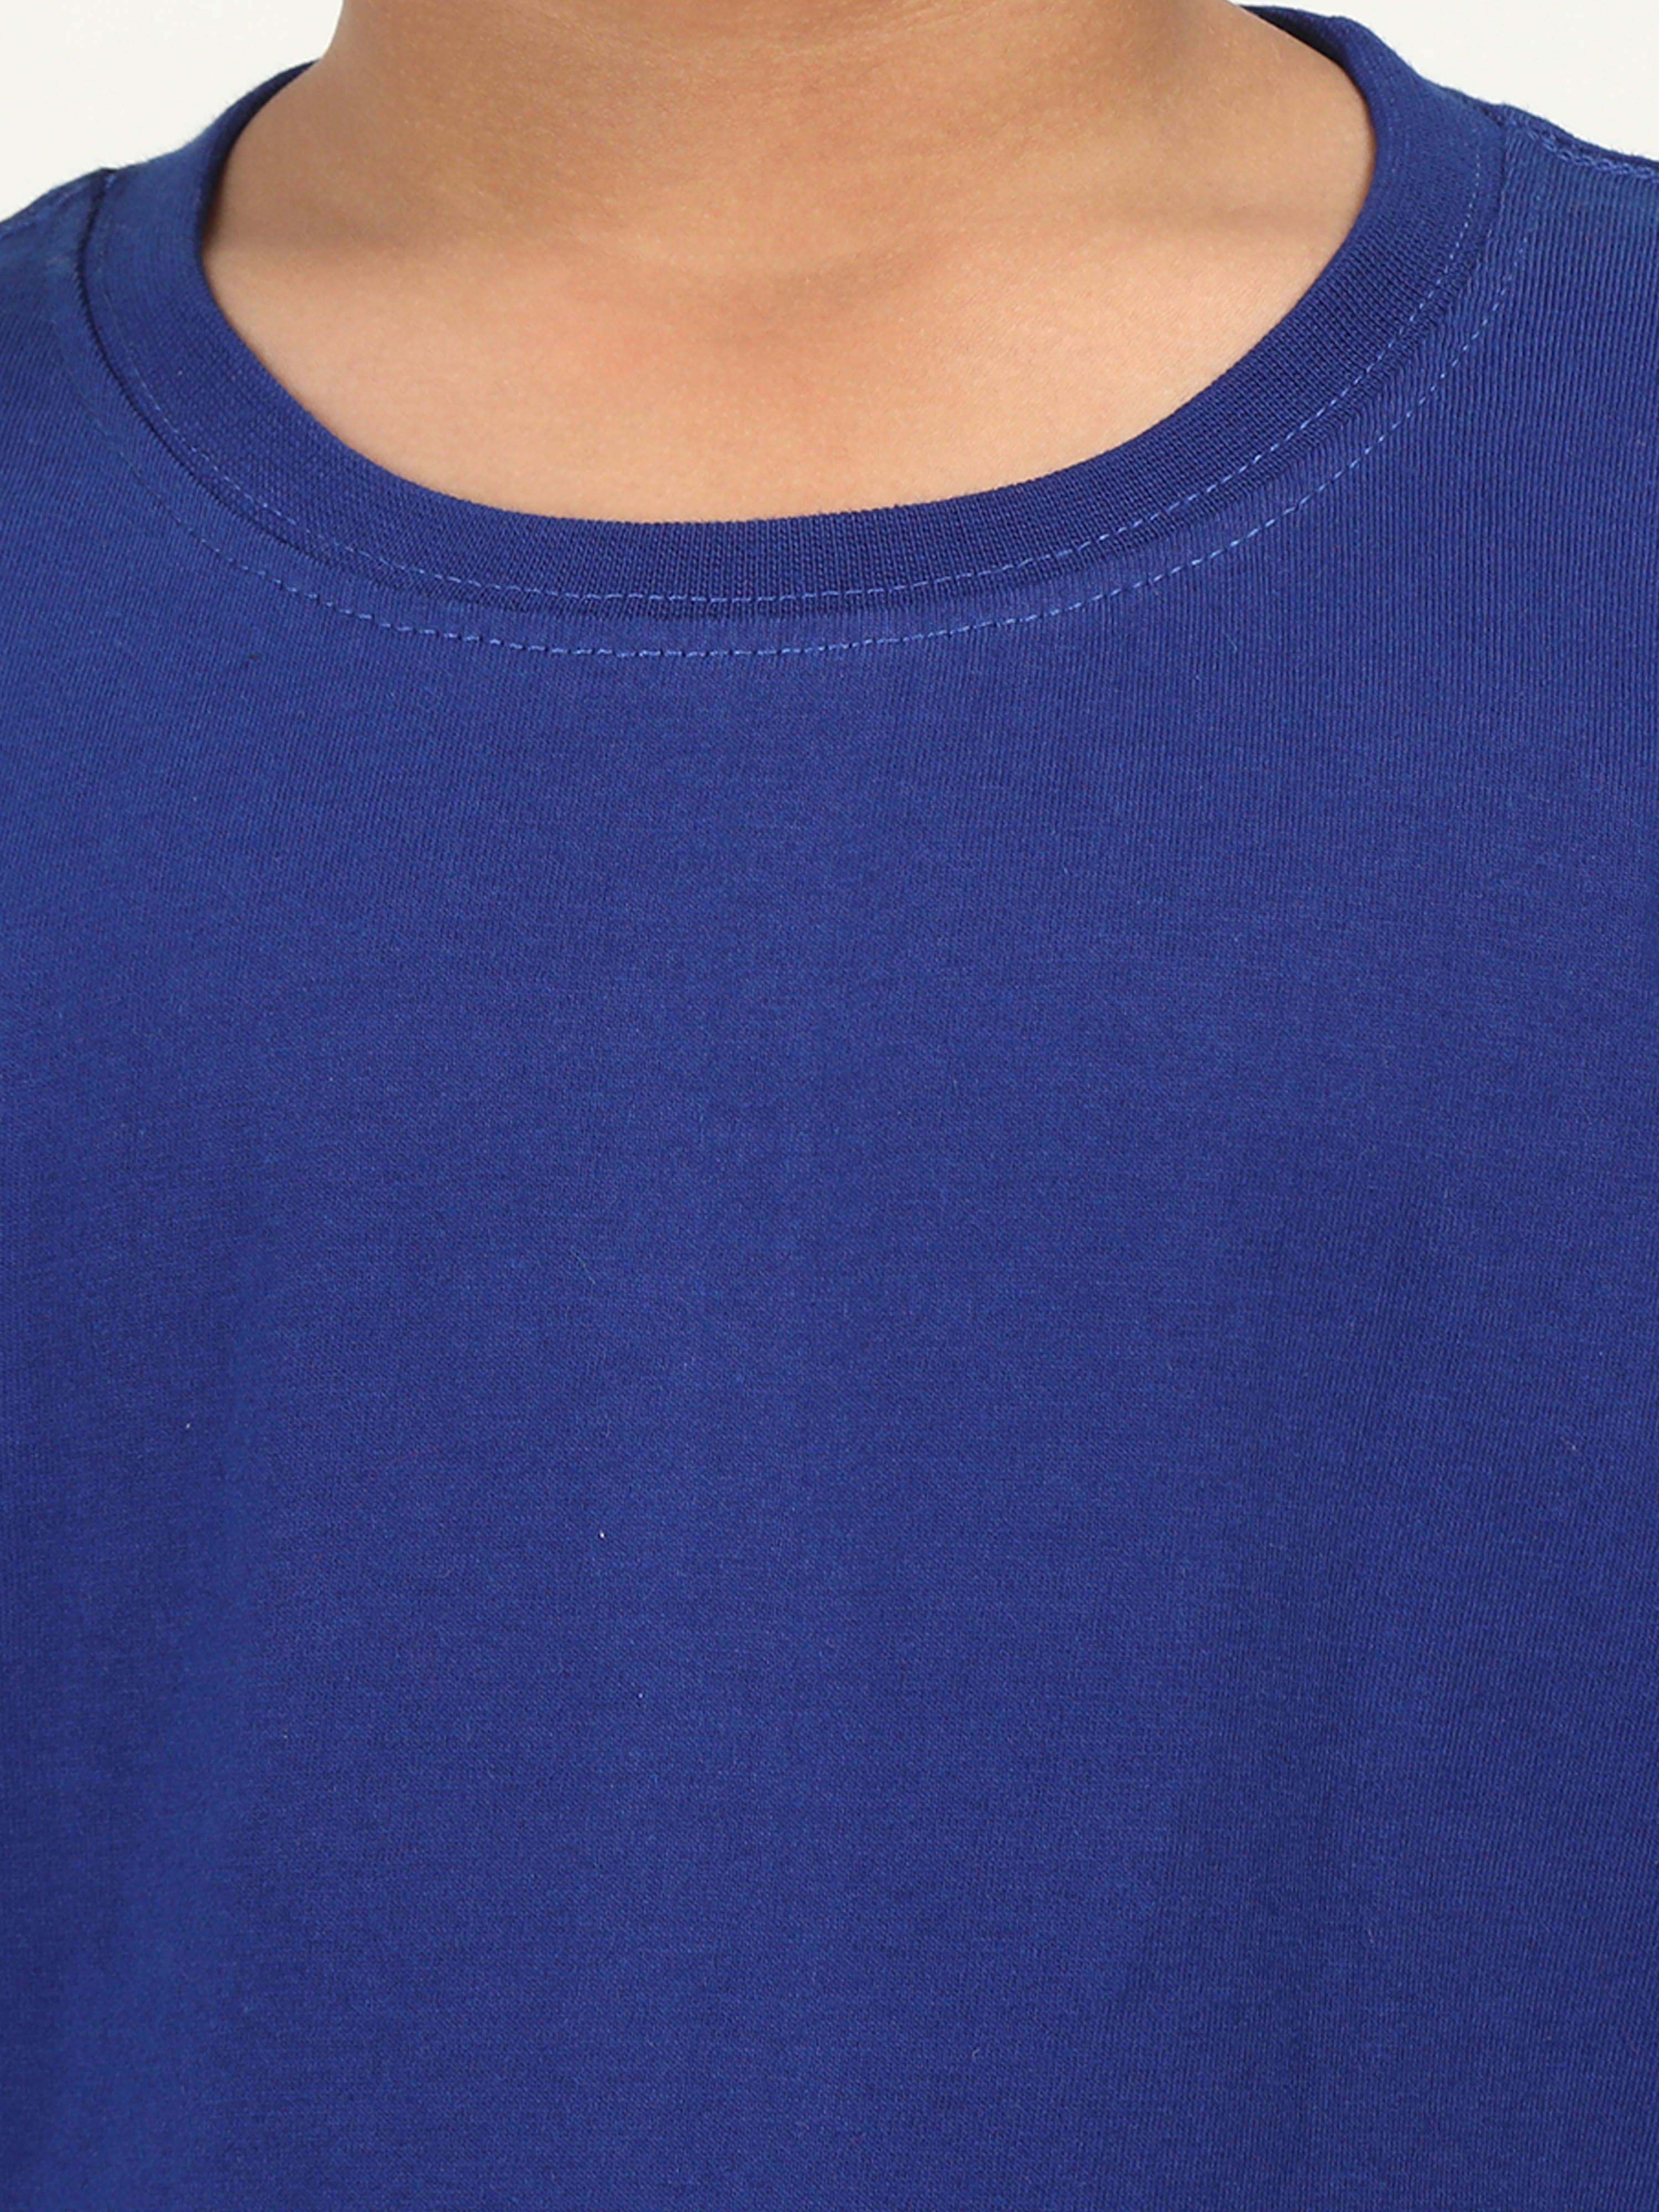 Solids: Plain Royal Blue Kids T-shirt